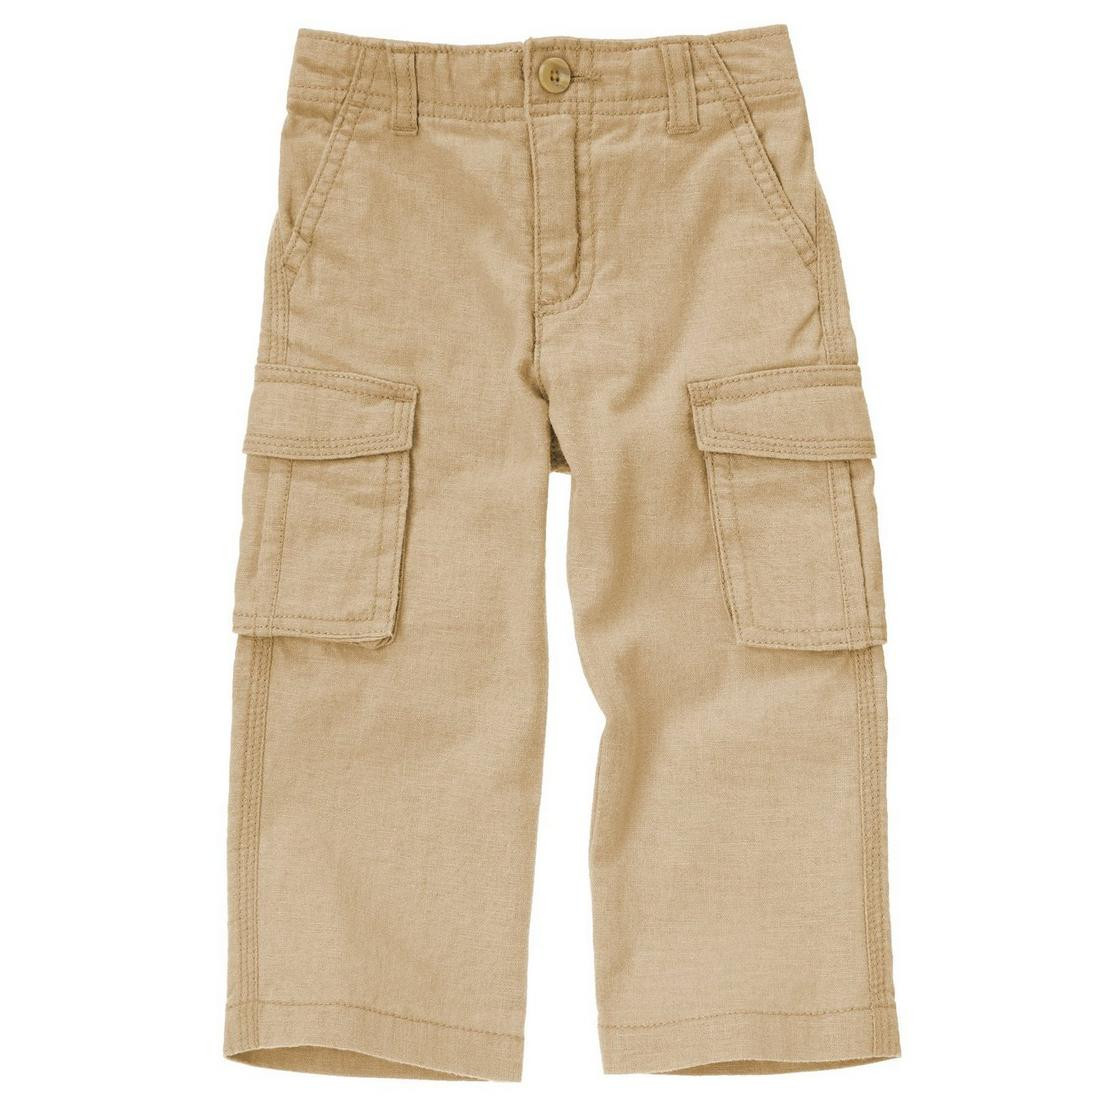 Дитячі штани для хлопчика 12-18, 18-24 місяці